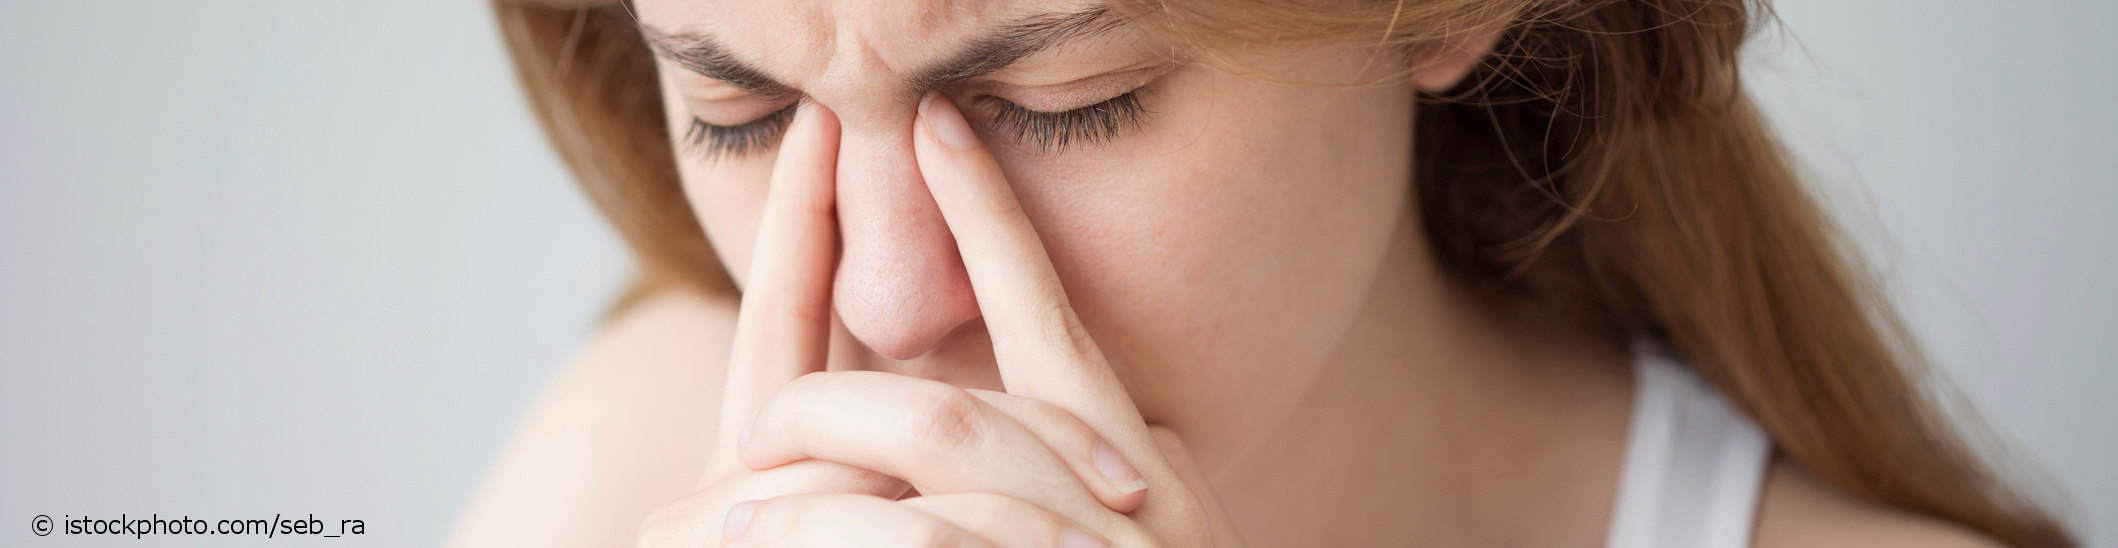 Junge Frau mit Cluster-Kopfschmerz drückt mit ihren Zeigefingern zwischen Nase und inneren Lidrändern